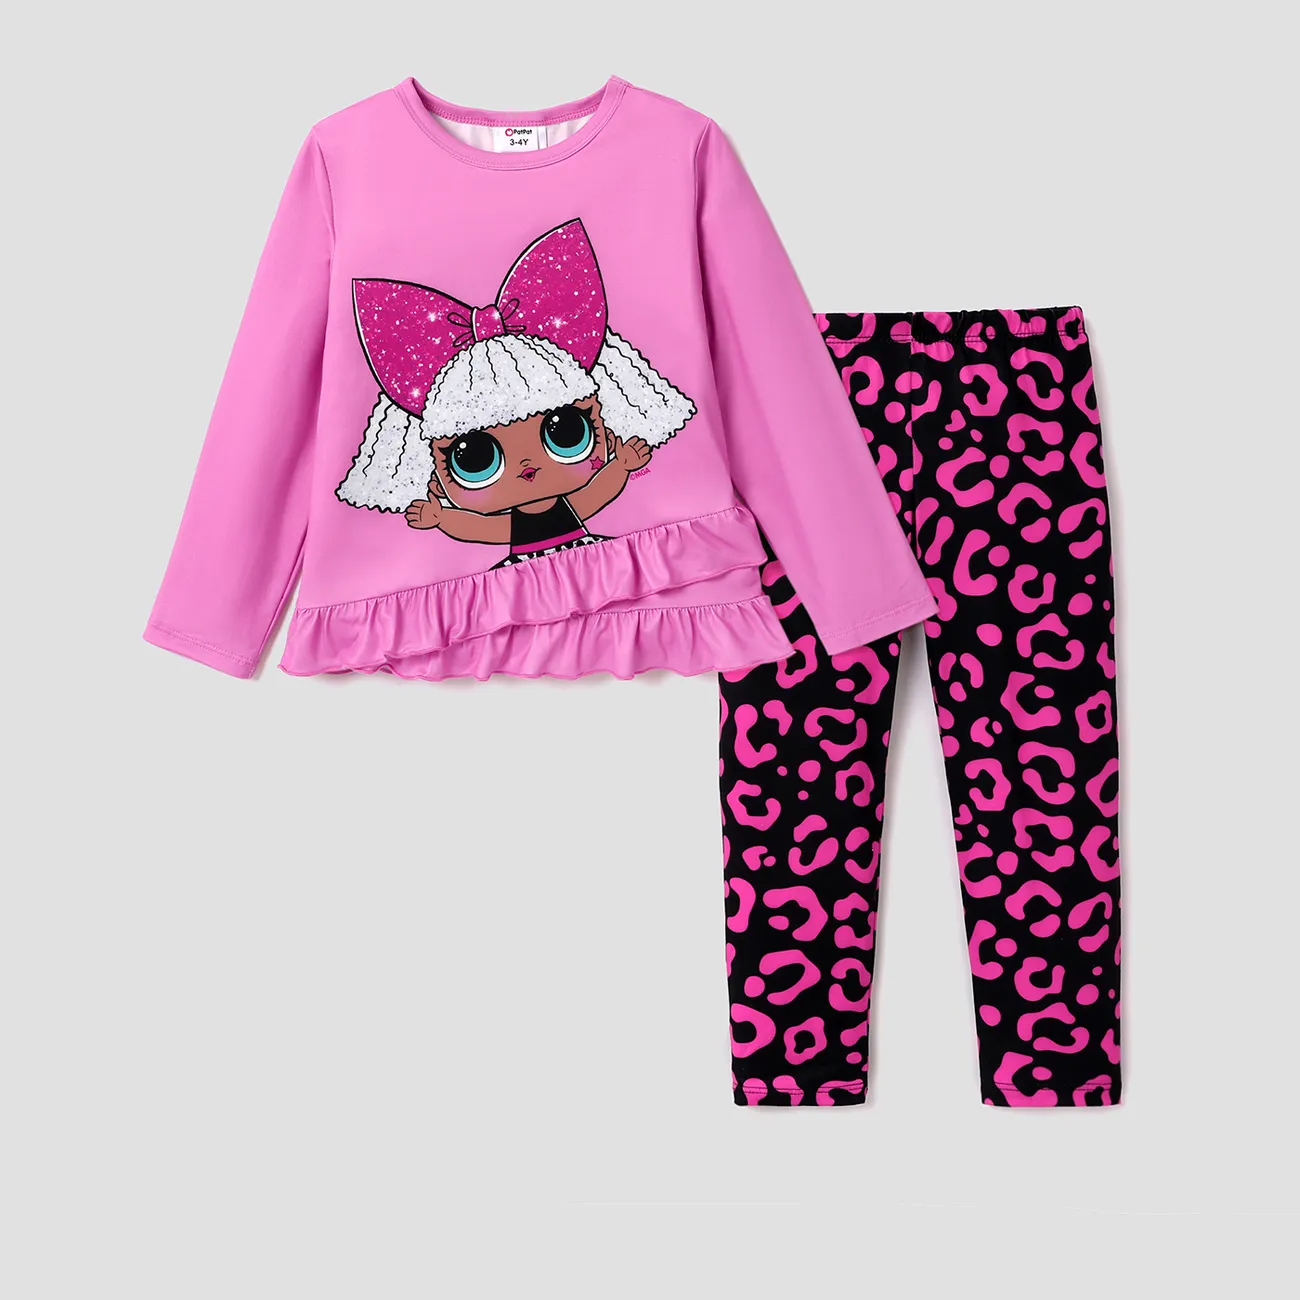 LOL Surprise 2 unidades Criança Menina Extremidades franzidas Infantil conjuntos de camisetas Rosa big image 1